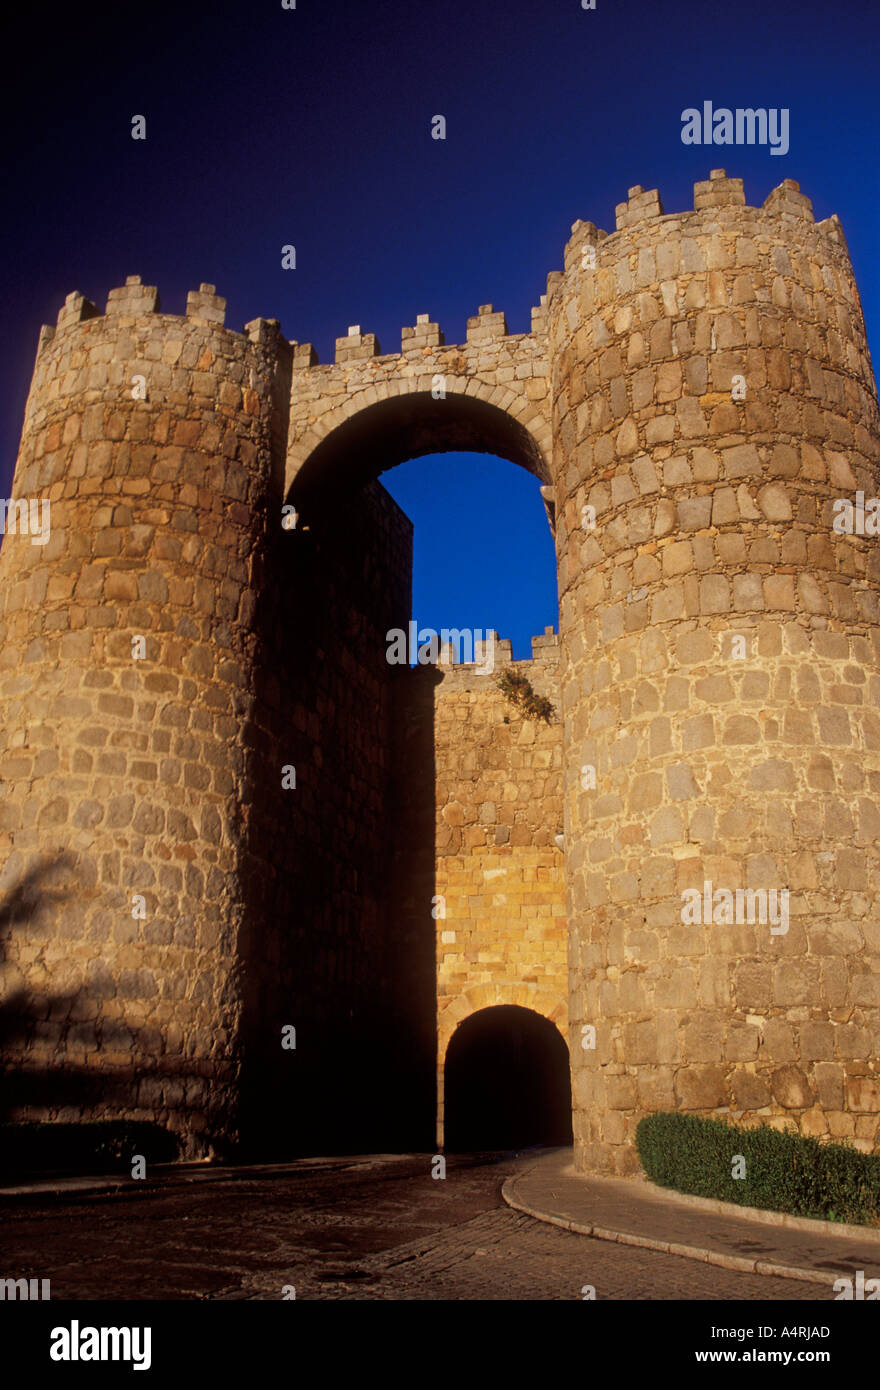 Puerta de San Vicente, San Vicente, porte de ville fortifiée médiévale, ville d'avila, Avila province, Castille et Leon, Espagne, Europe Banque D'Images